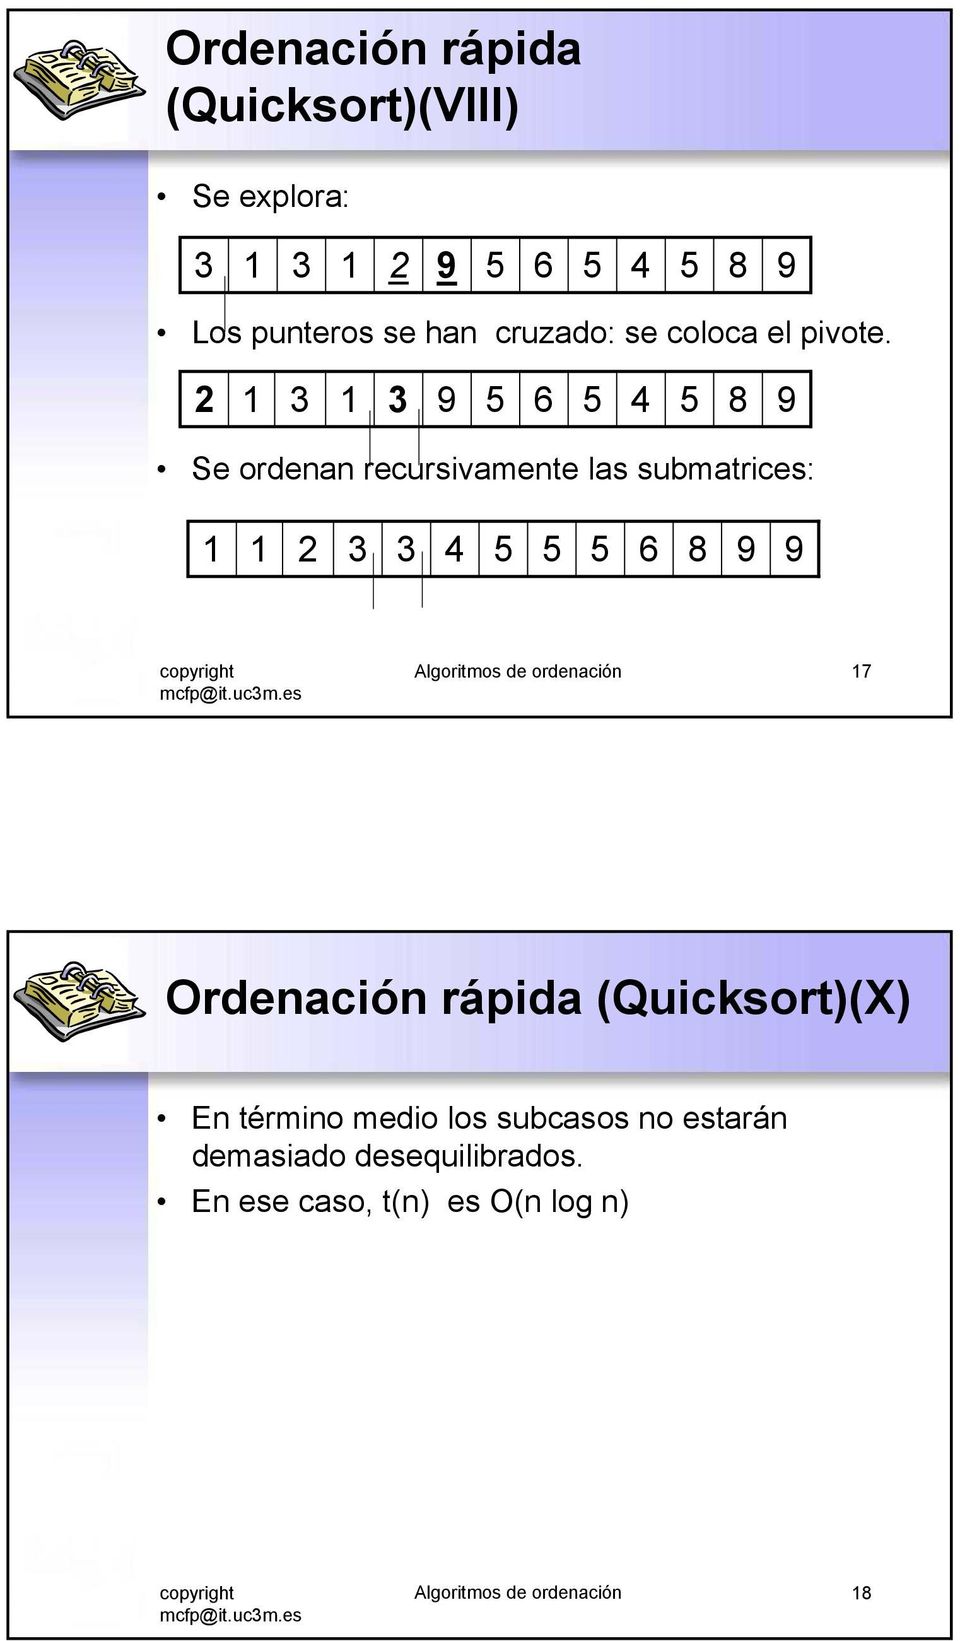 2 6 4 Se ordenan recursivamente las submatrices: 2 4 6 Algoritmos de ordenación 7